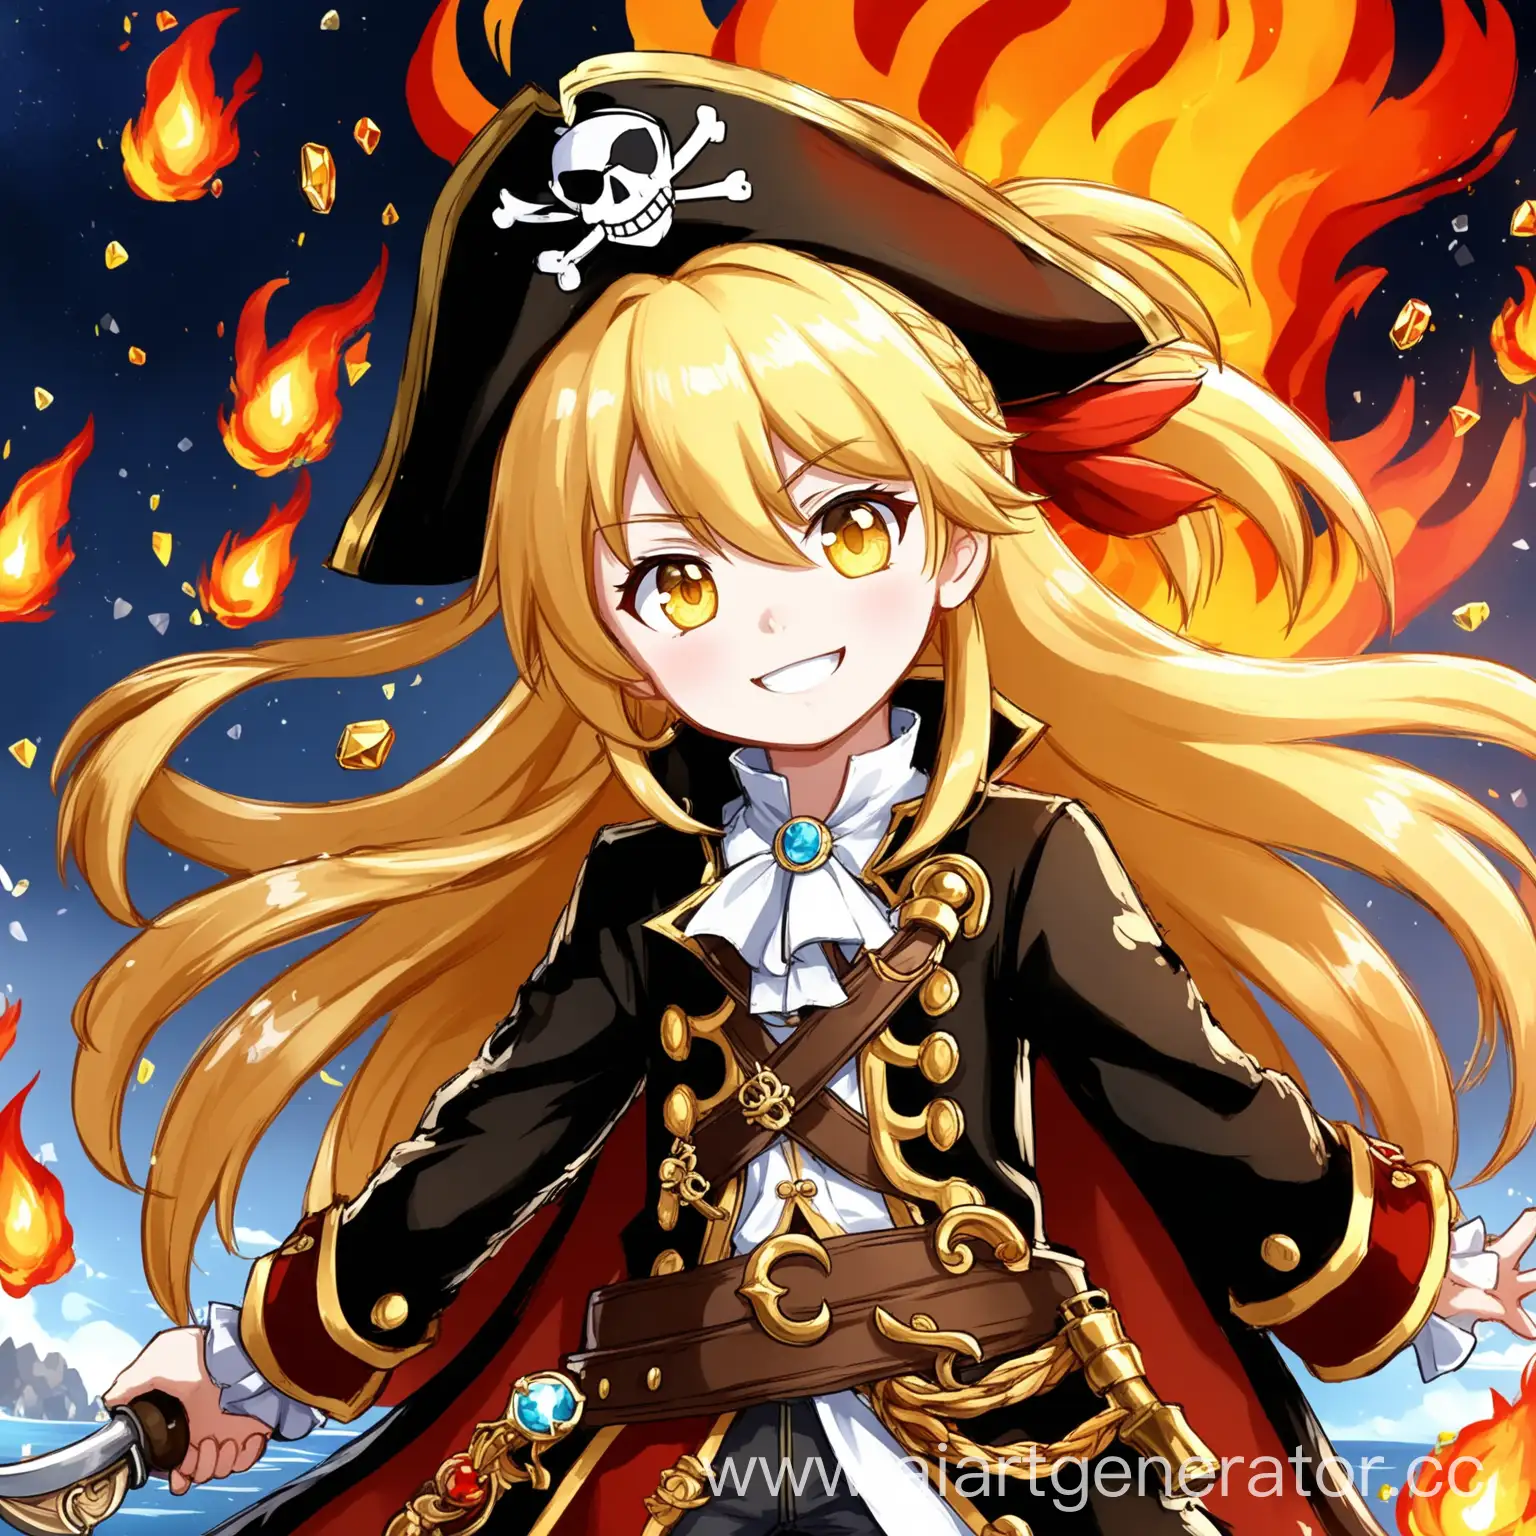 Hook from Honkai star rail, honkai: star rail, anime girl, жёлтые волосы, длинные волосы, причёска хвостик, блондинка, 8 лет, жёлтые глаза, костюм пирата, чёрный пиратский плащ, на голове корона с драгоценными камнями, яркая улыбка, вокруг огонь